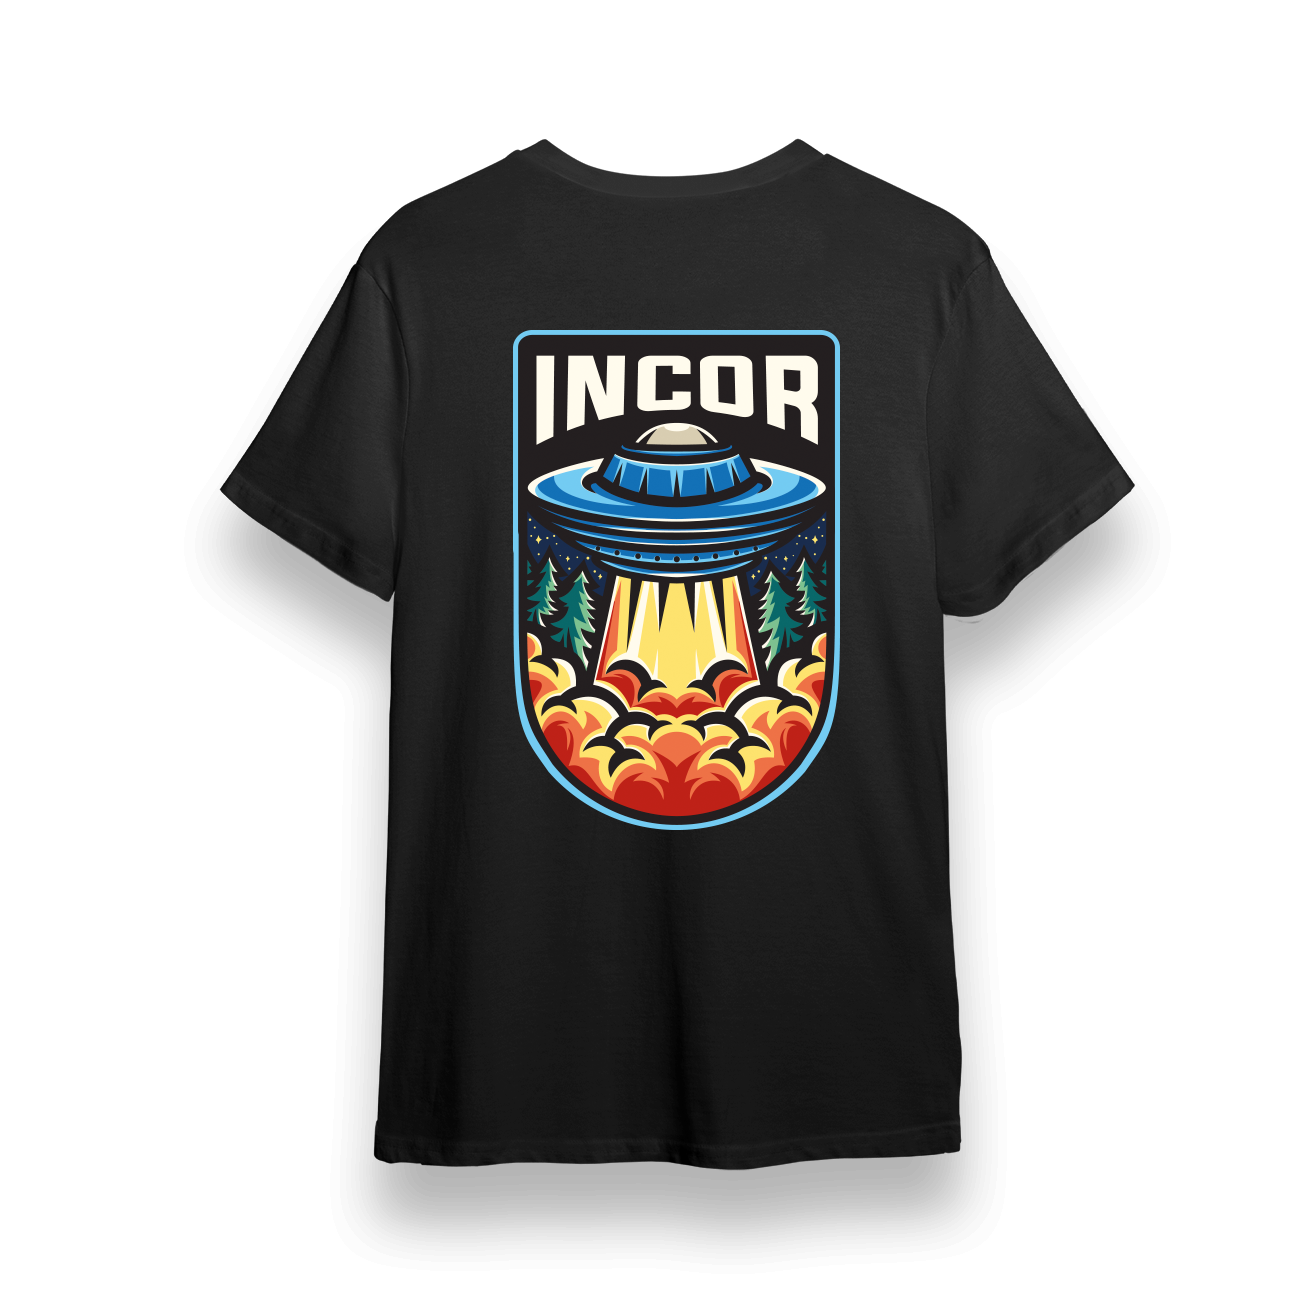 Incor invasion - INCOR - In Case Of Revolution